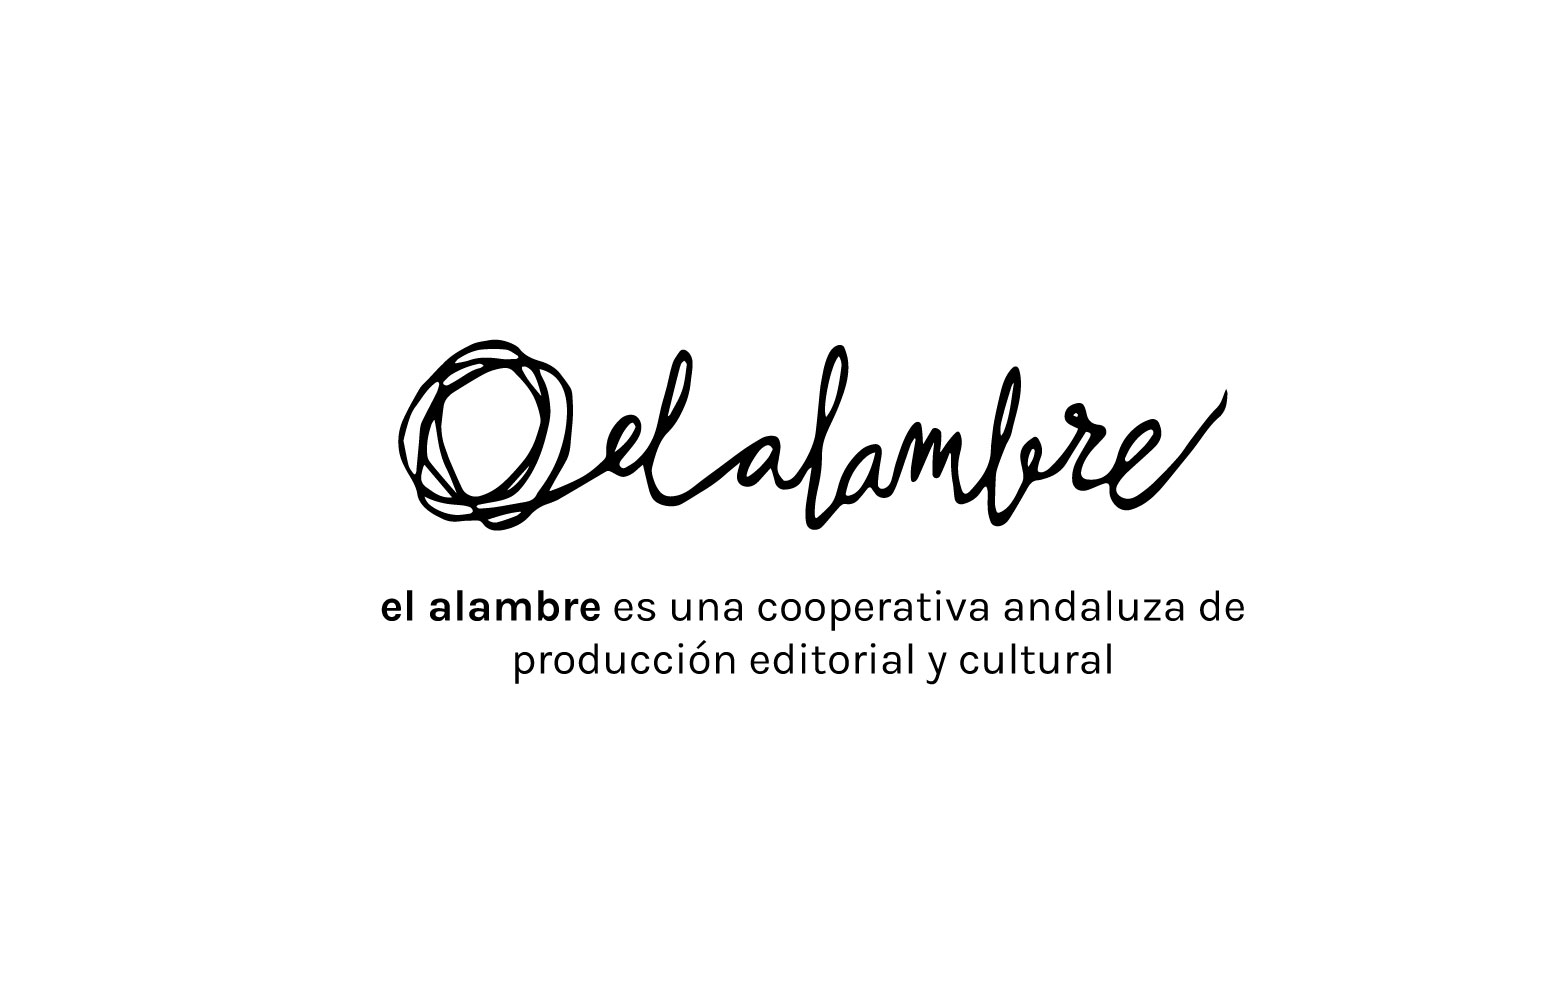 (c) Elalambre.org